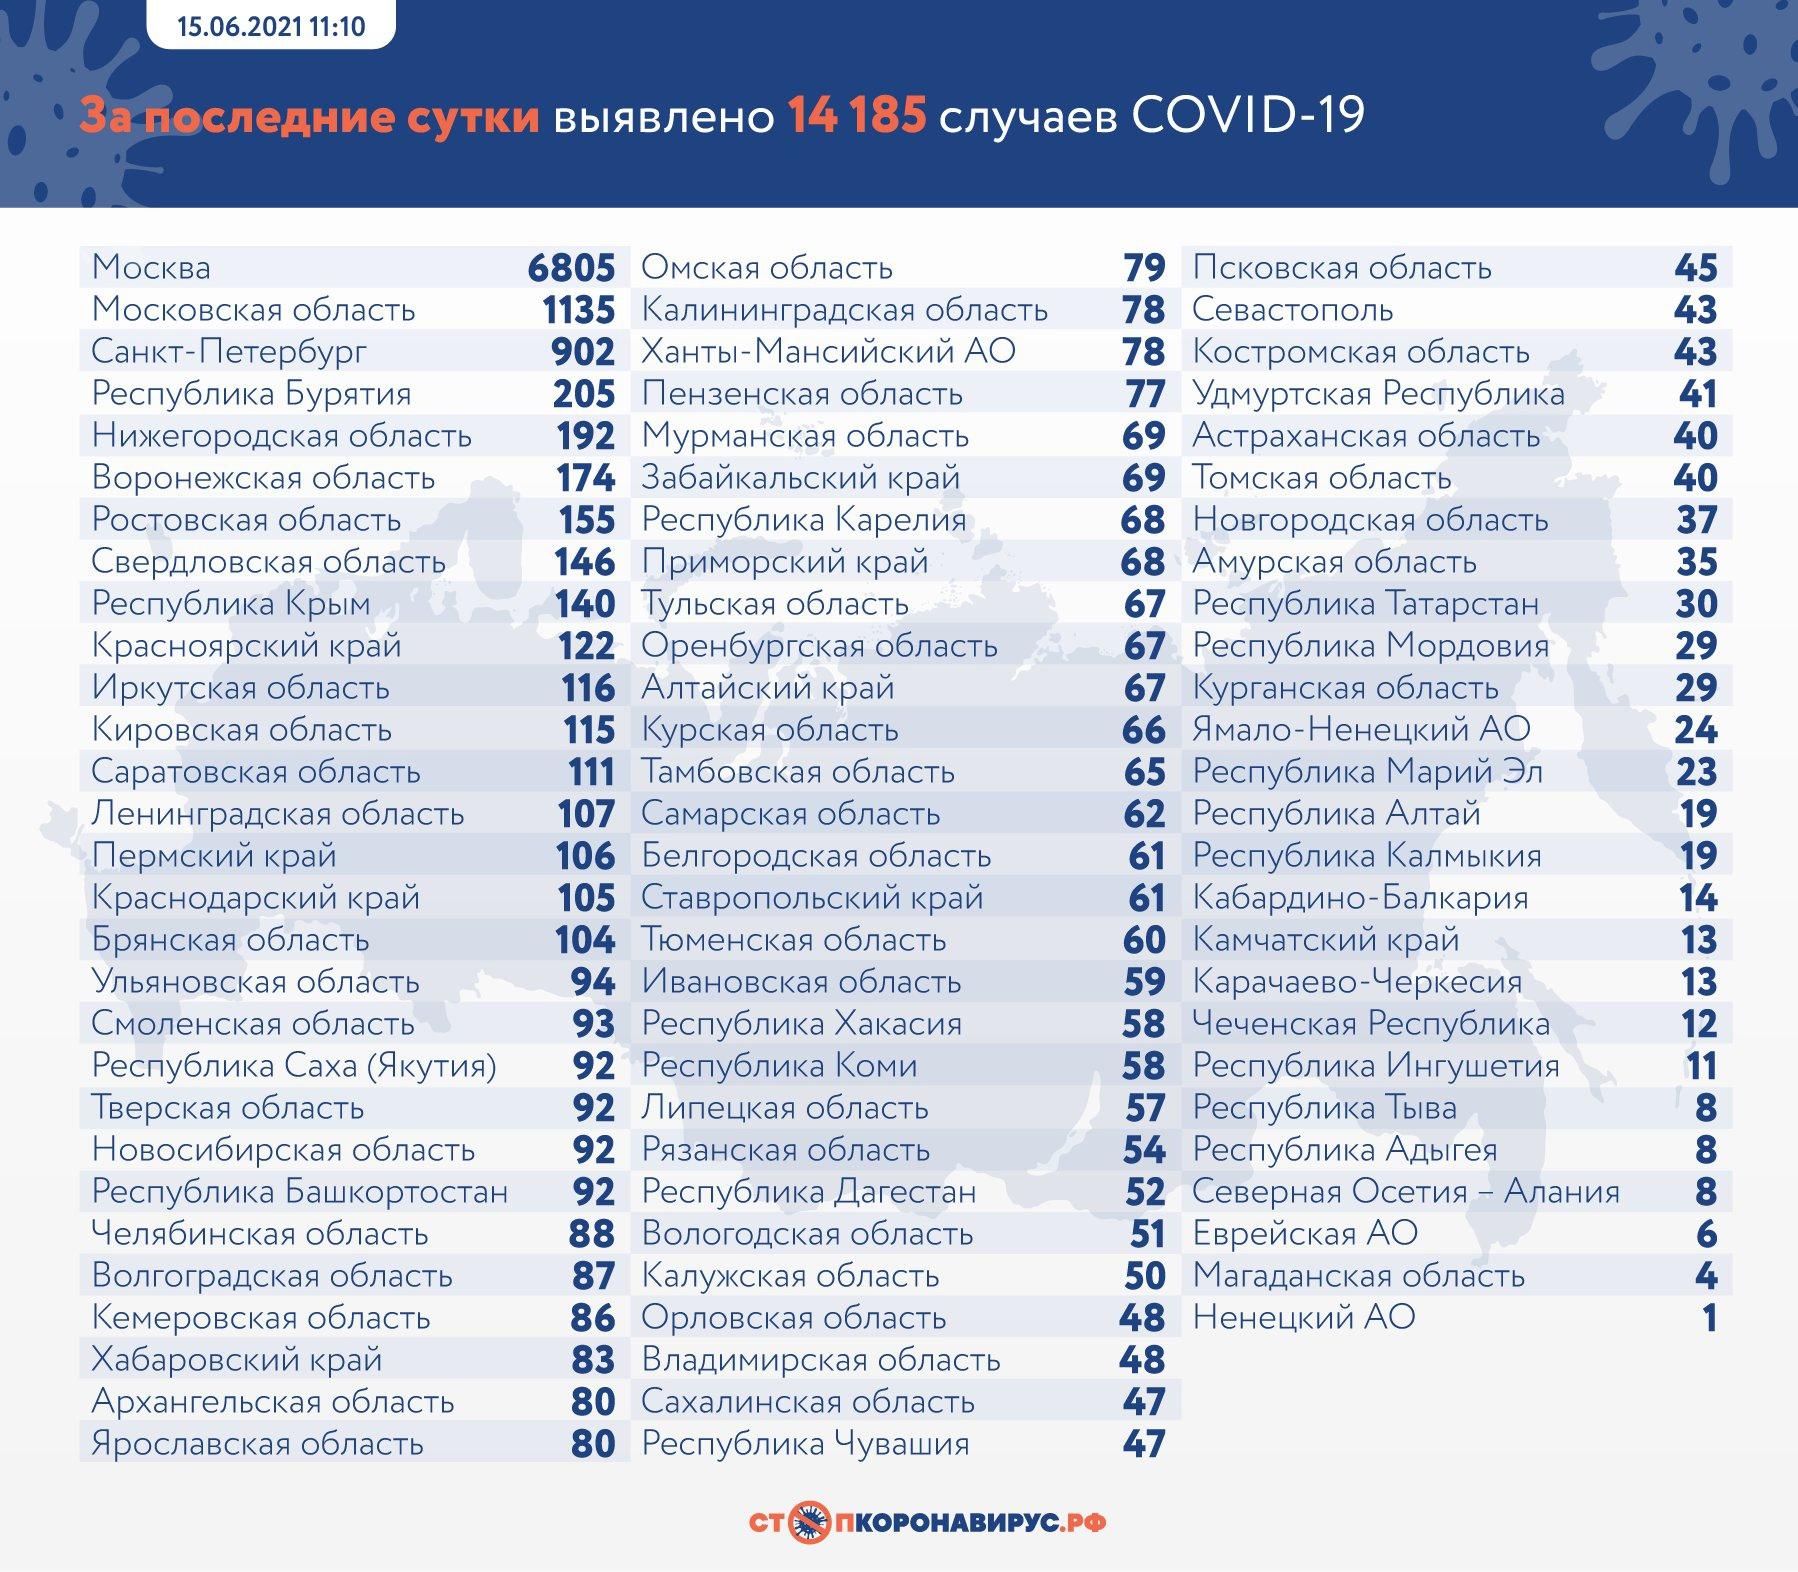 Фото 14 185 случаев заражения COVID-19 выявили в России за сутки 2